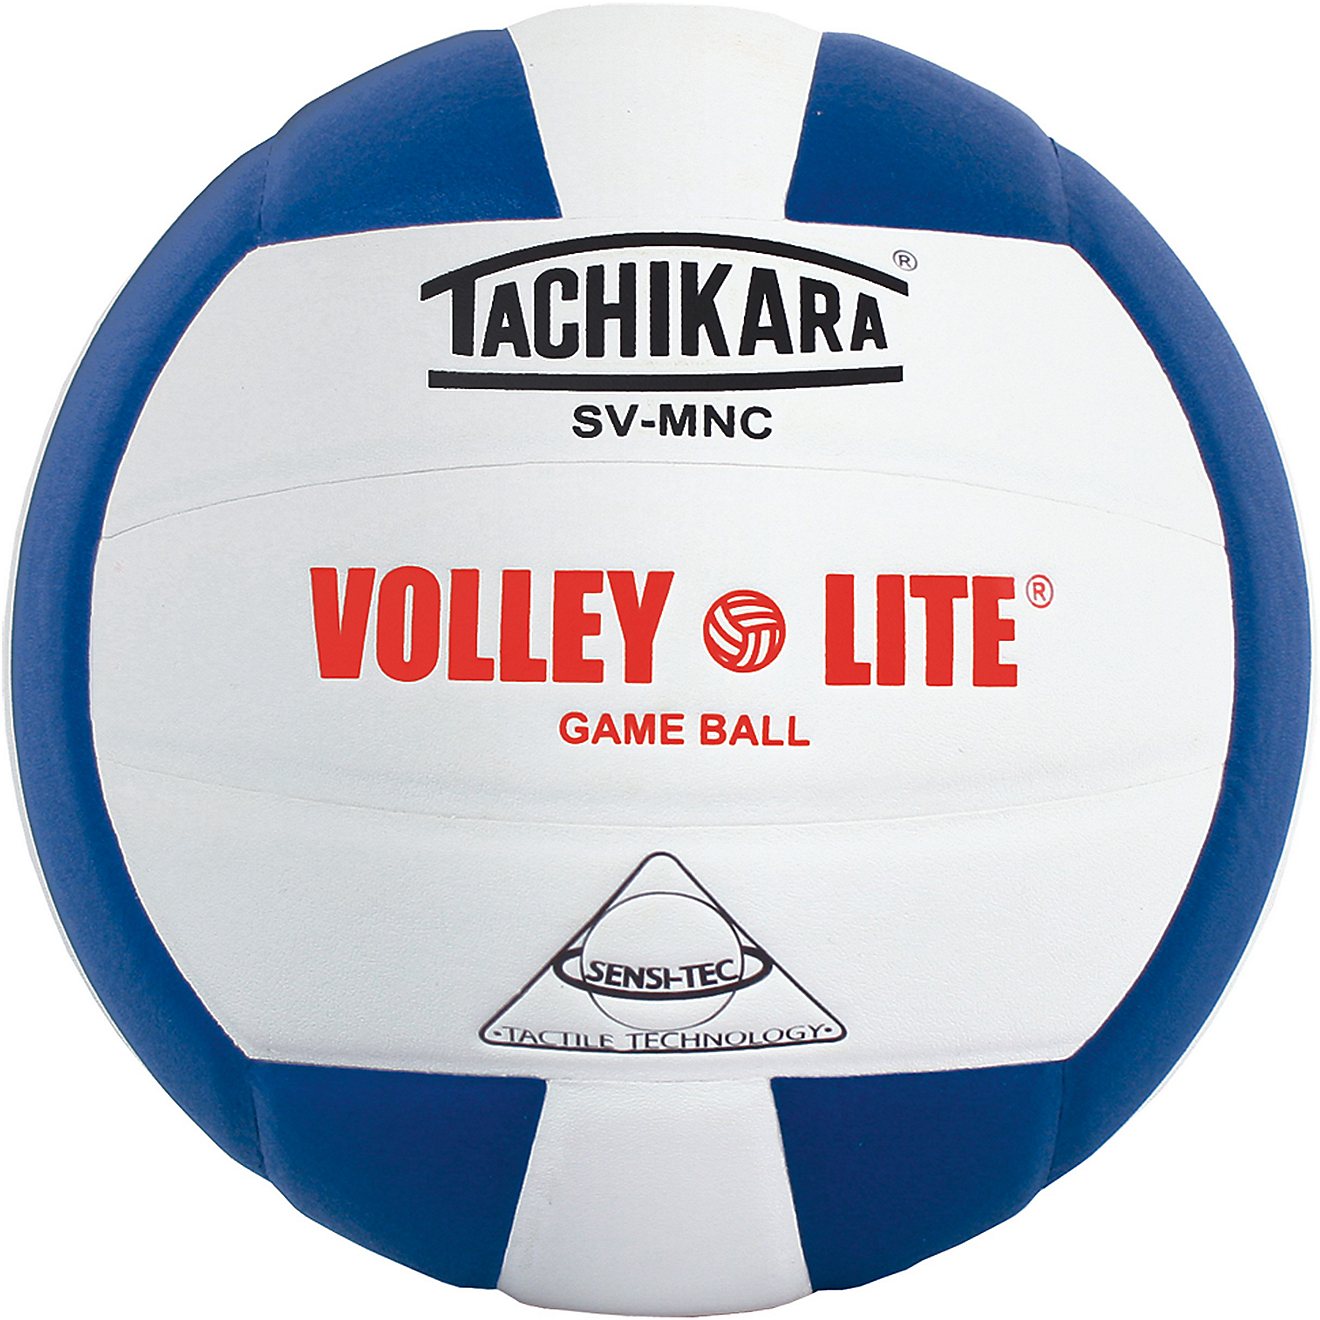 Tachikara Recreational Volleyball Net 